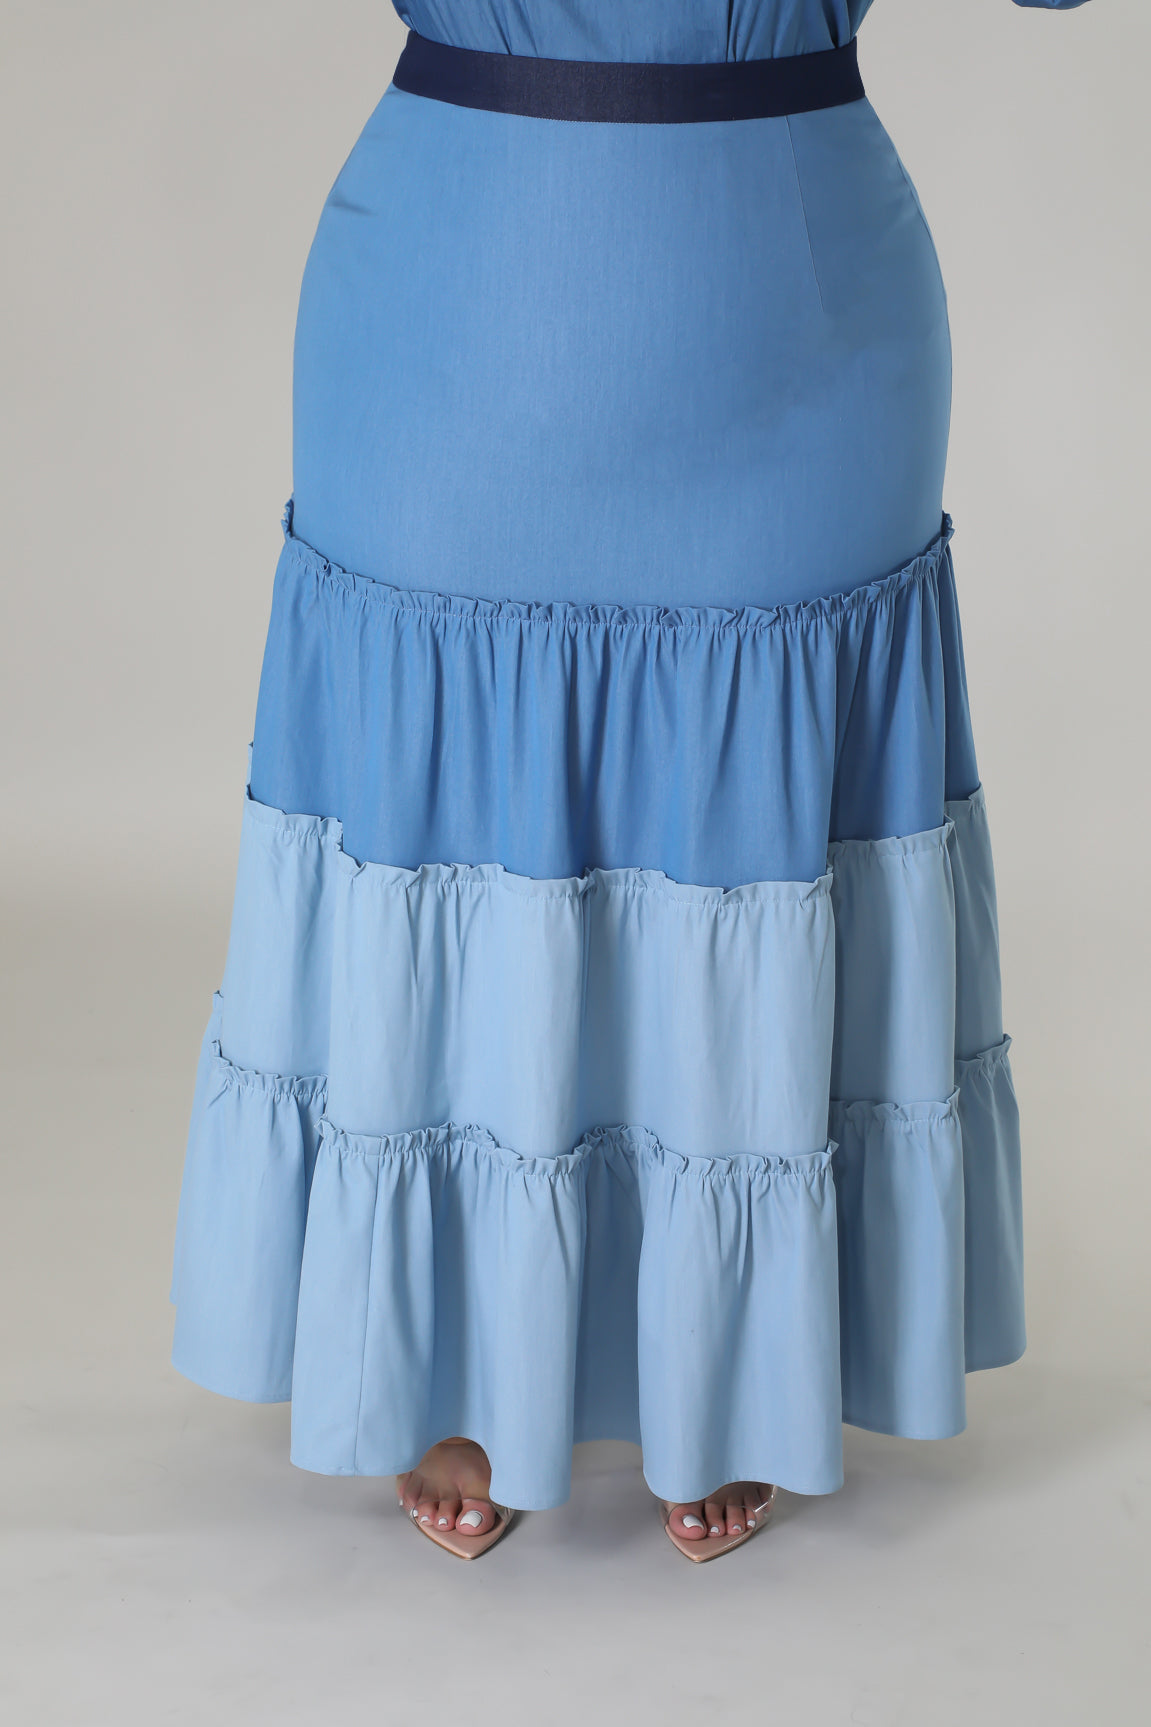 Theodora Skirt (Skirt Only)